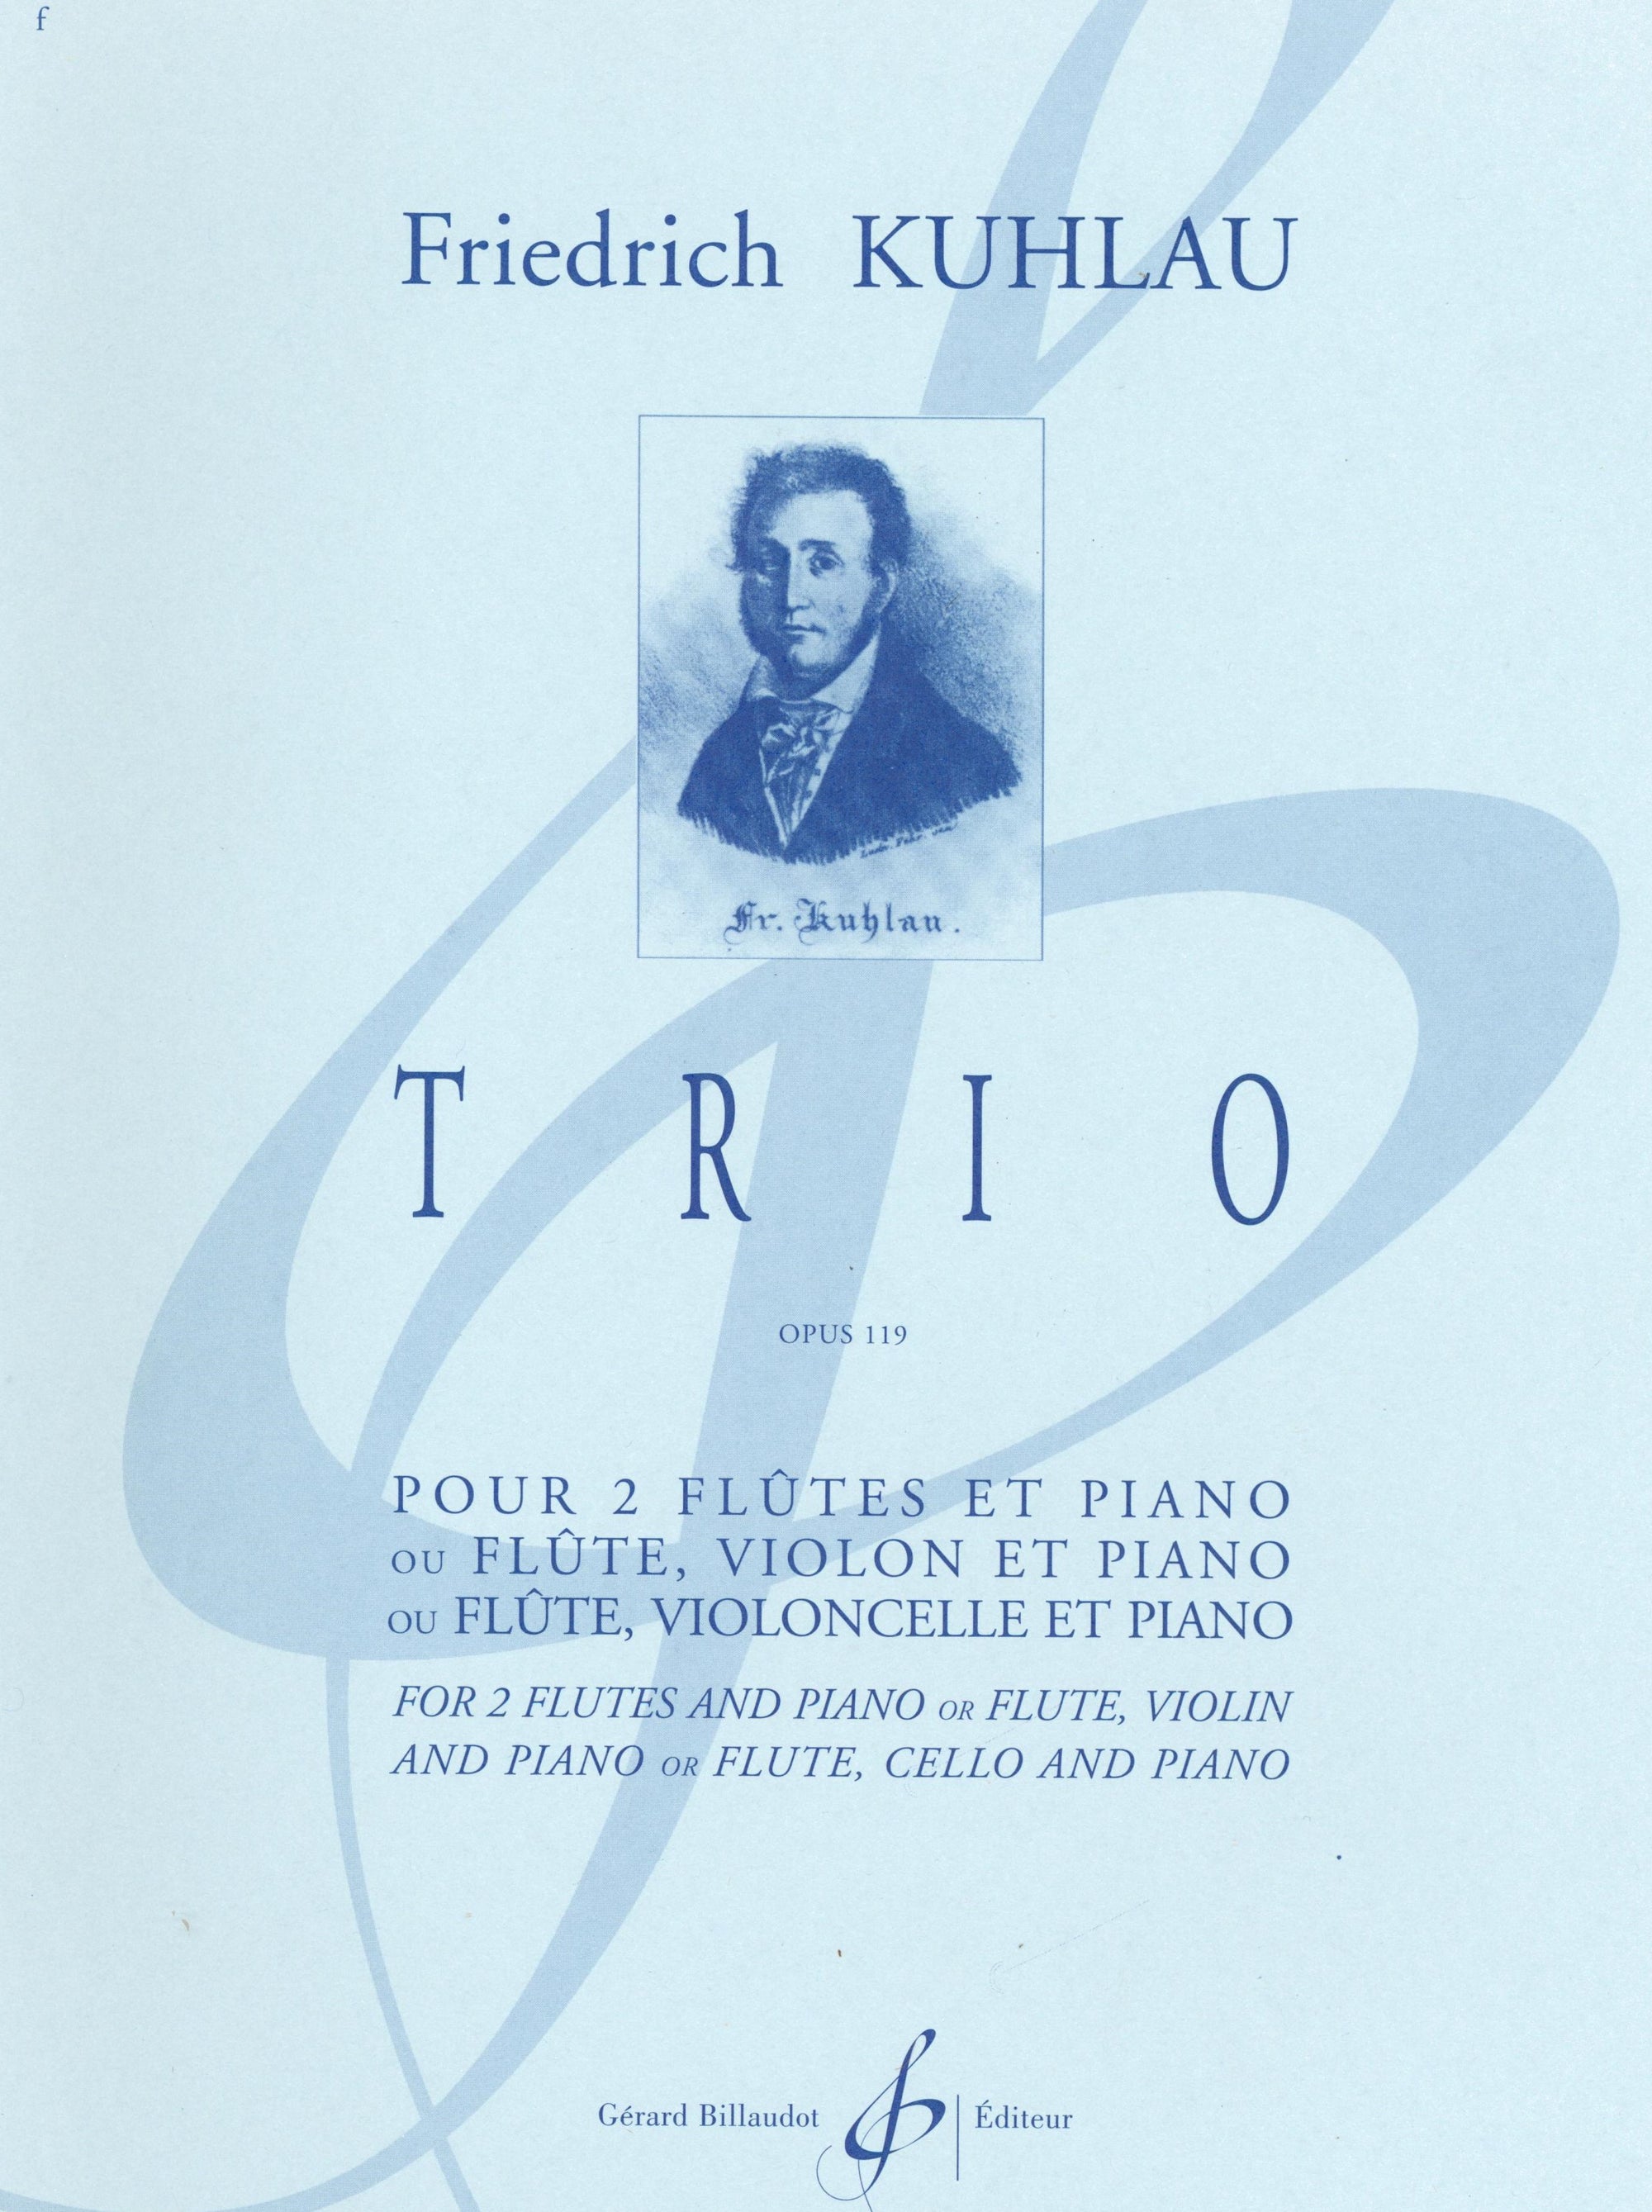 Kuhlau: Trio in G Major, Op. 119